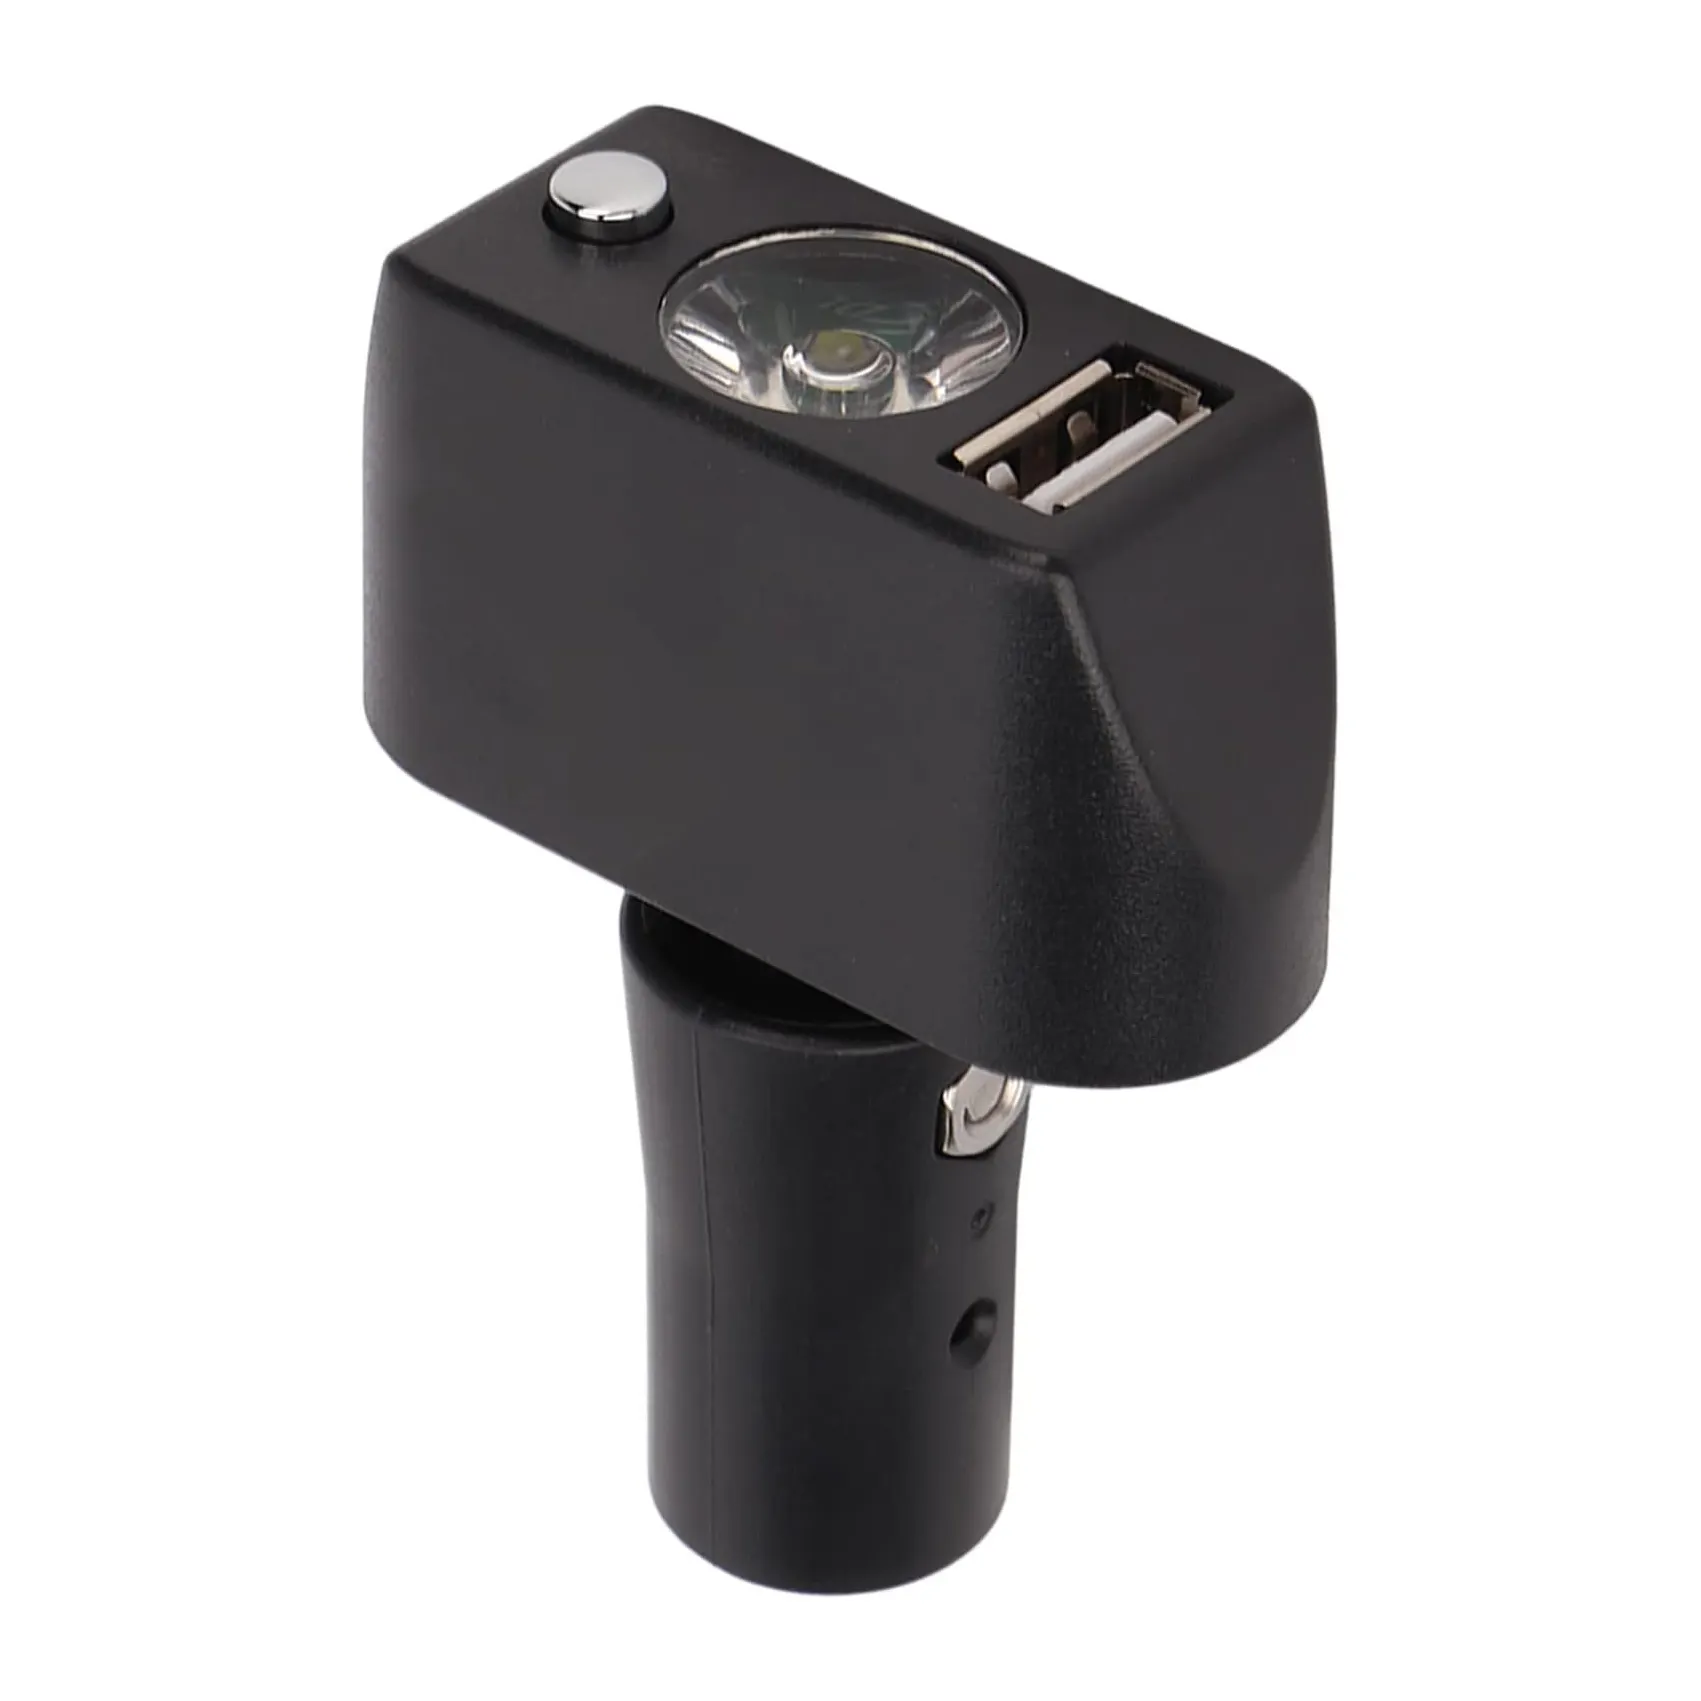 Lampe de fauteuil roulant électrique à LED KSL-01 avec port USB Tête XLR à 3 broches Chargement USB Angle réglable Éclairage de fauteuil roulant électrique à LED